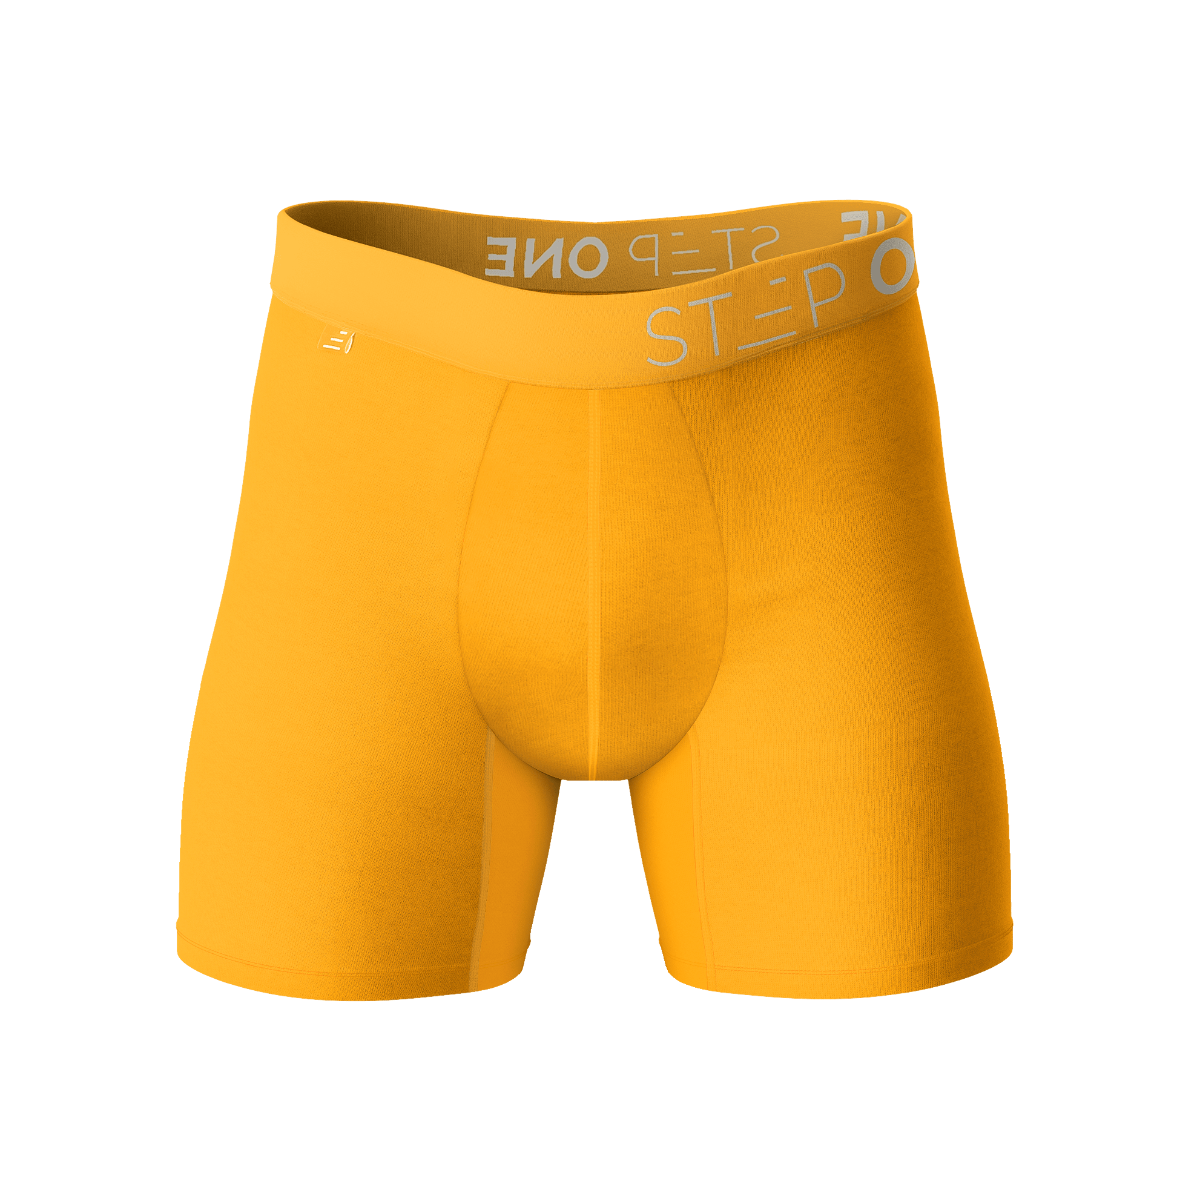 Boxer Brief - Egg Yolks  Step One Men's Underwear